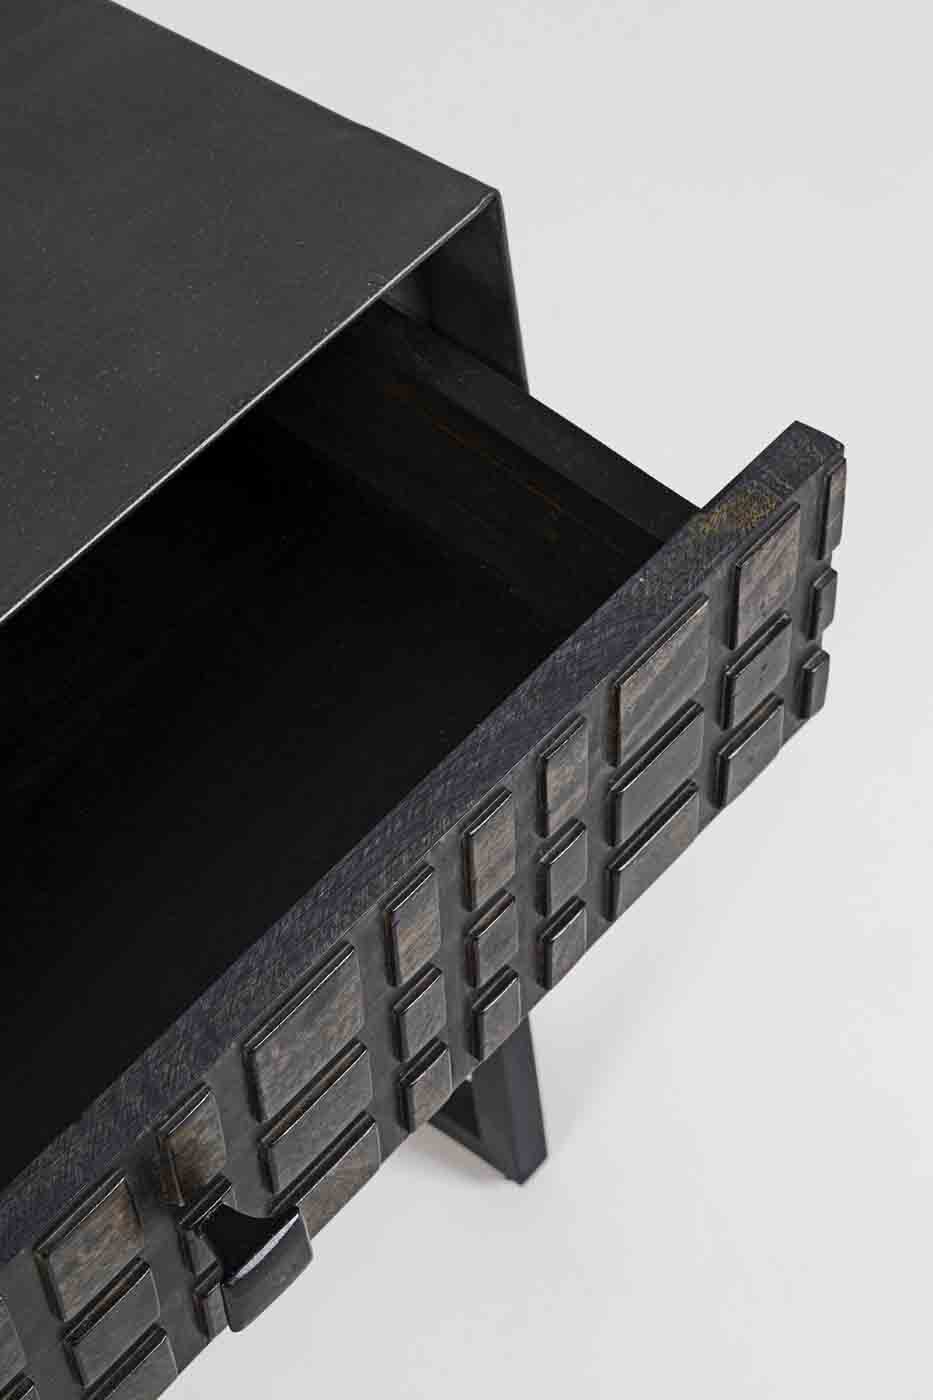 Der Beistelltisch Dorset wurde aus Mangoholz hergestellt. Der Tisch verfügt über eine Schublade. Das Gestell ist aus Metall in einem schwarzen Farbton.